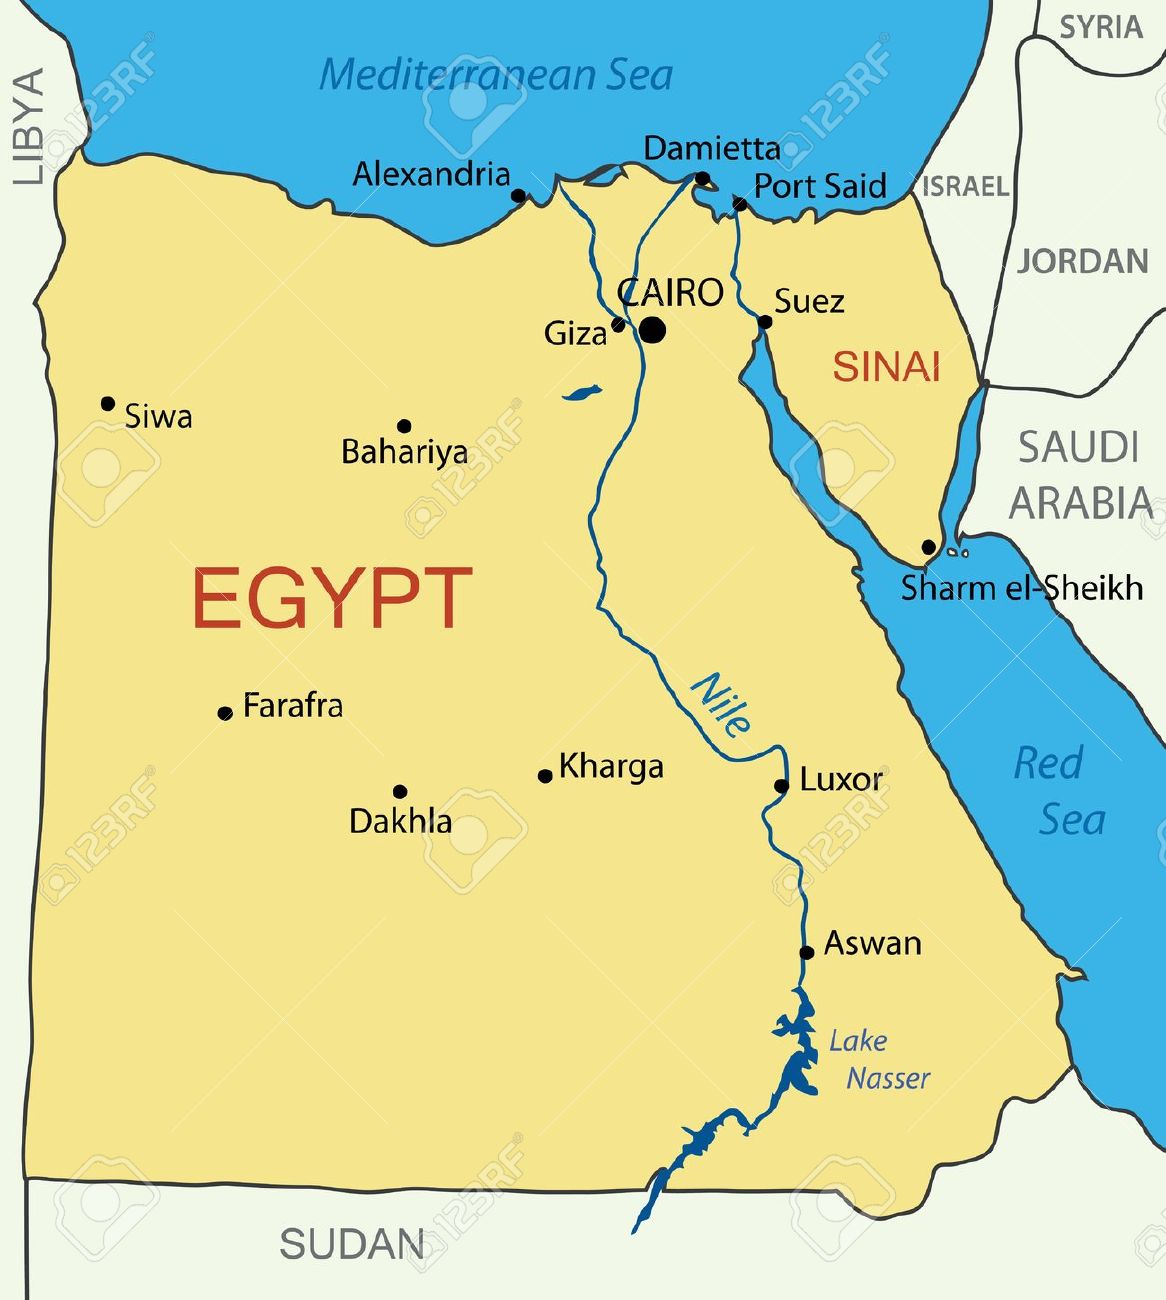 Tours de dos días a El Cairo desde el Puerto de Port Said.